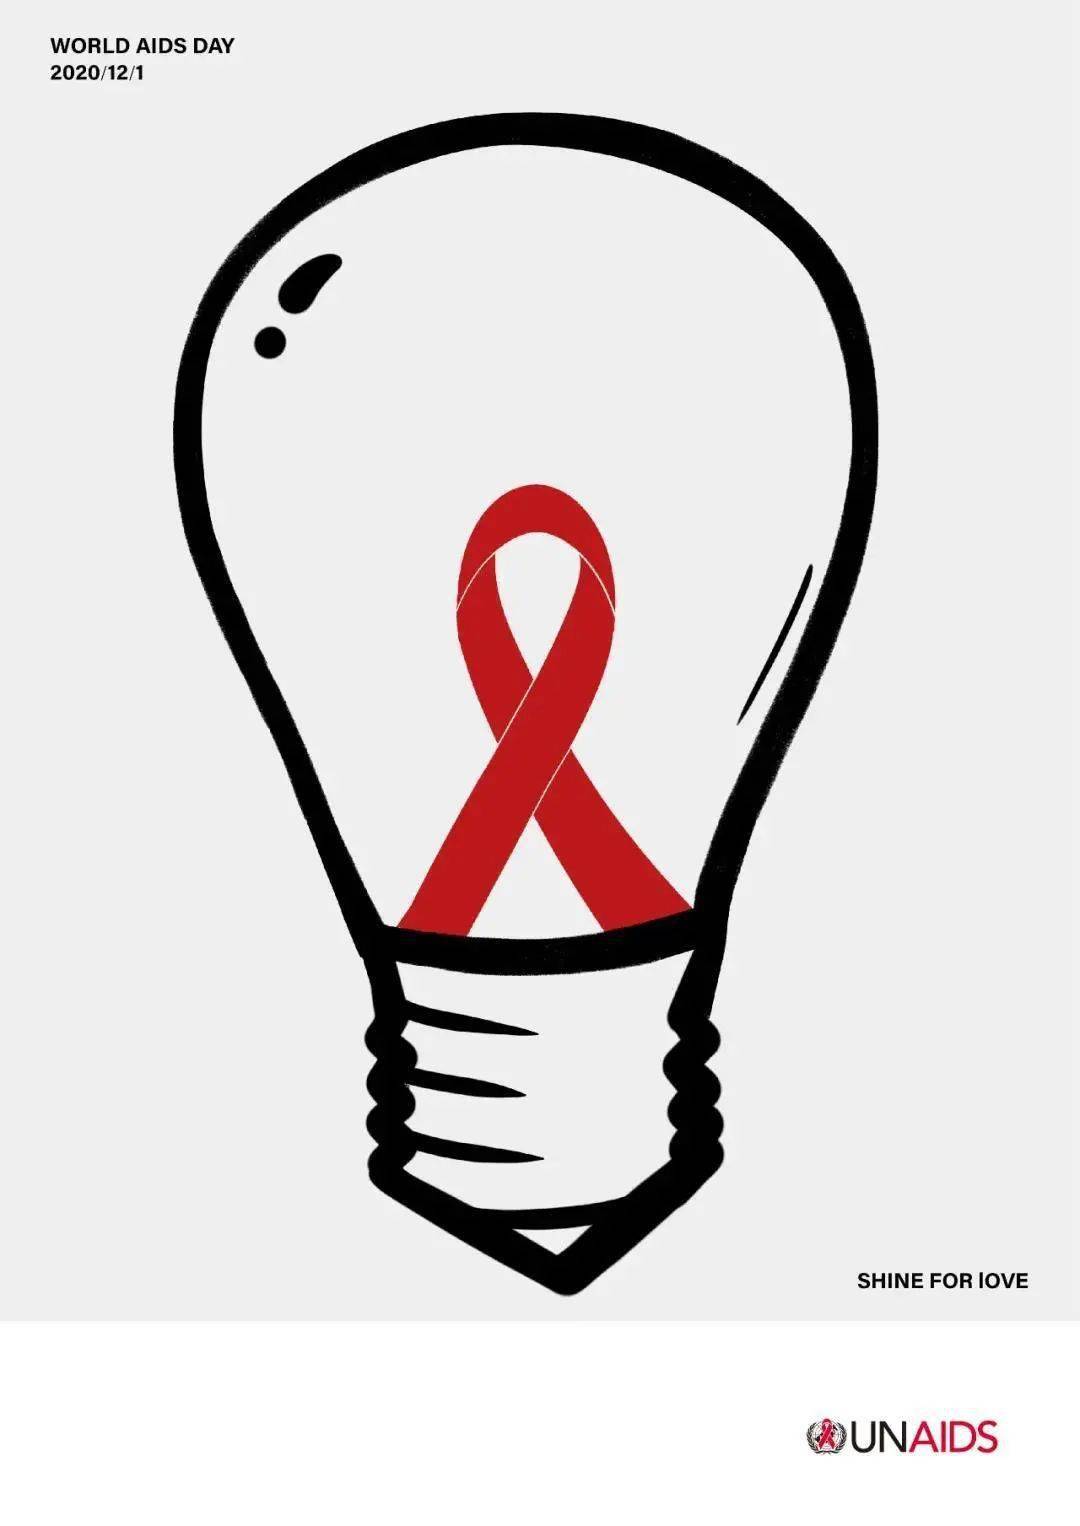 艾滋病设计图案大全图片